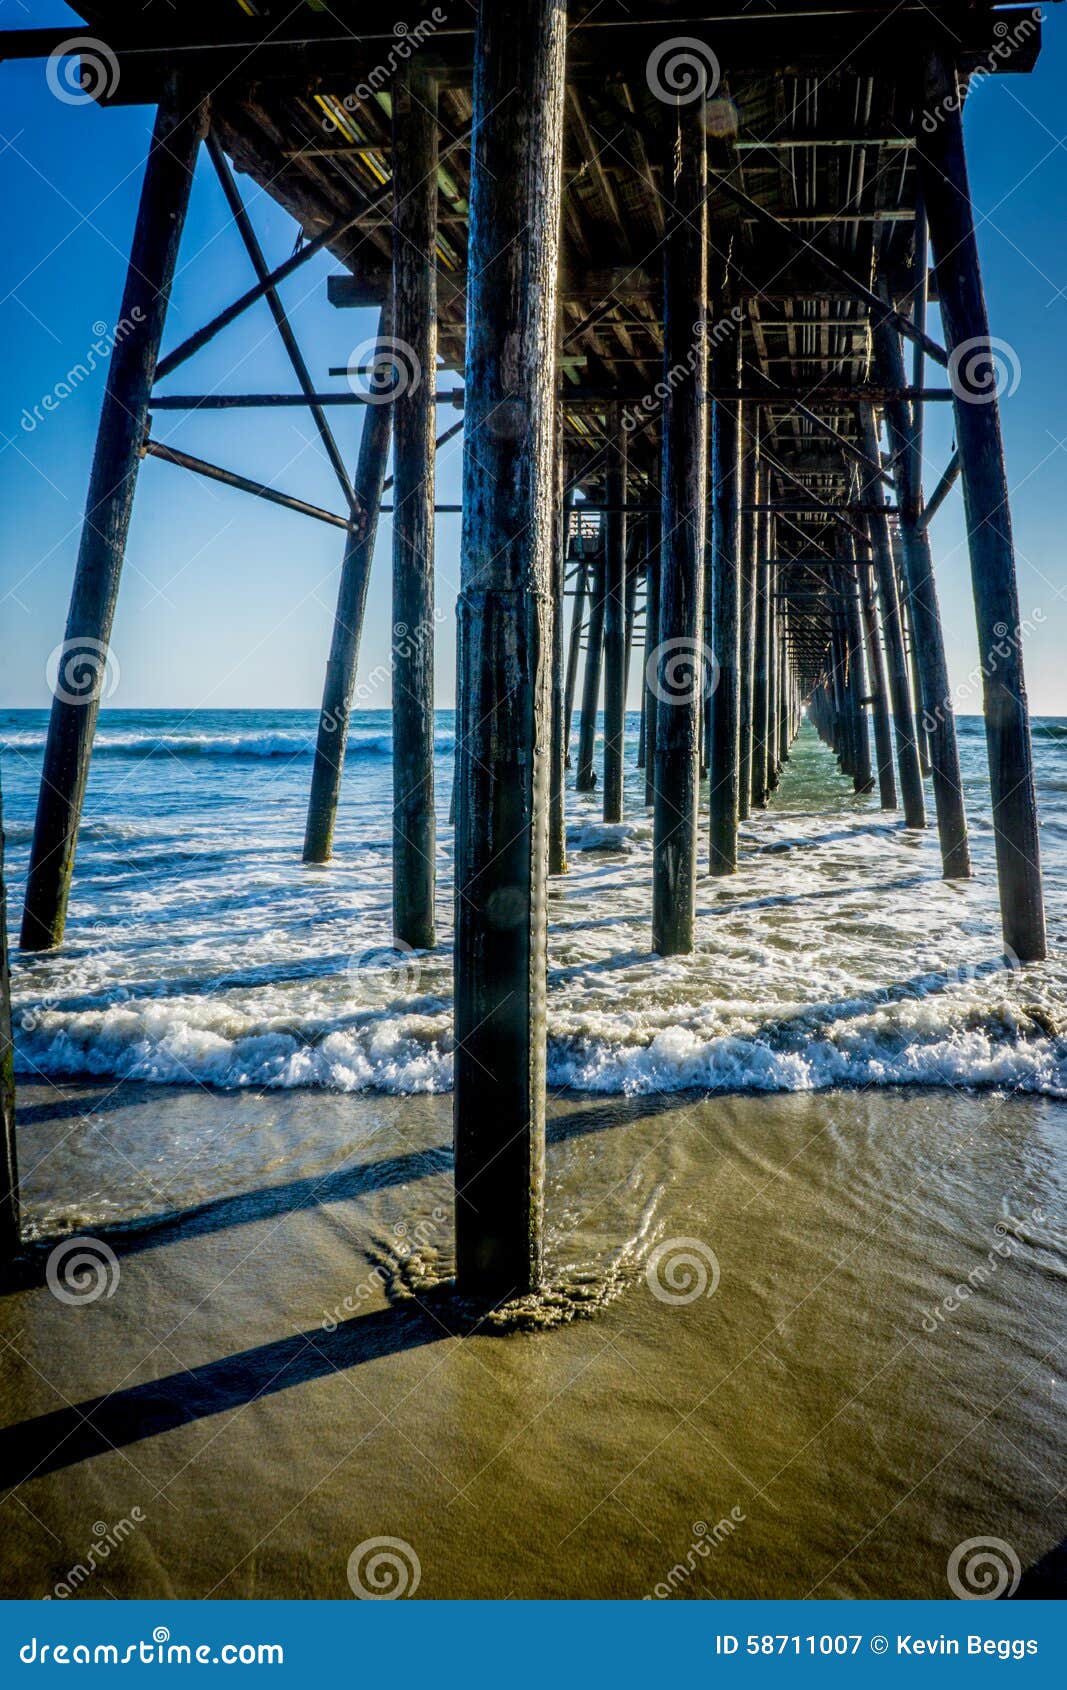 oceanside, california